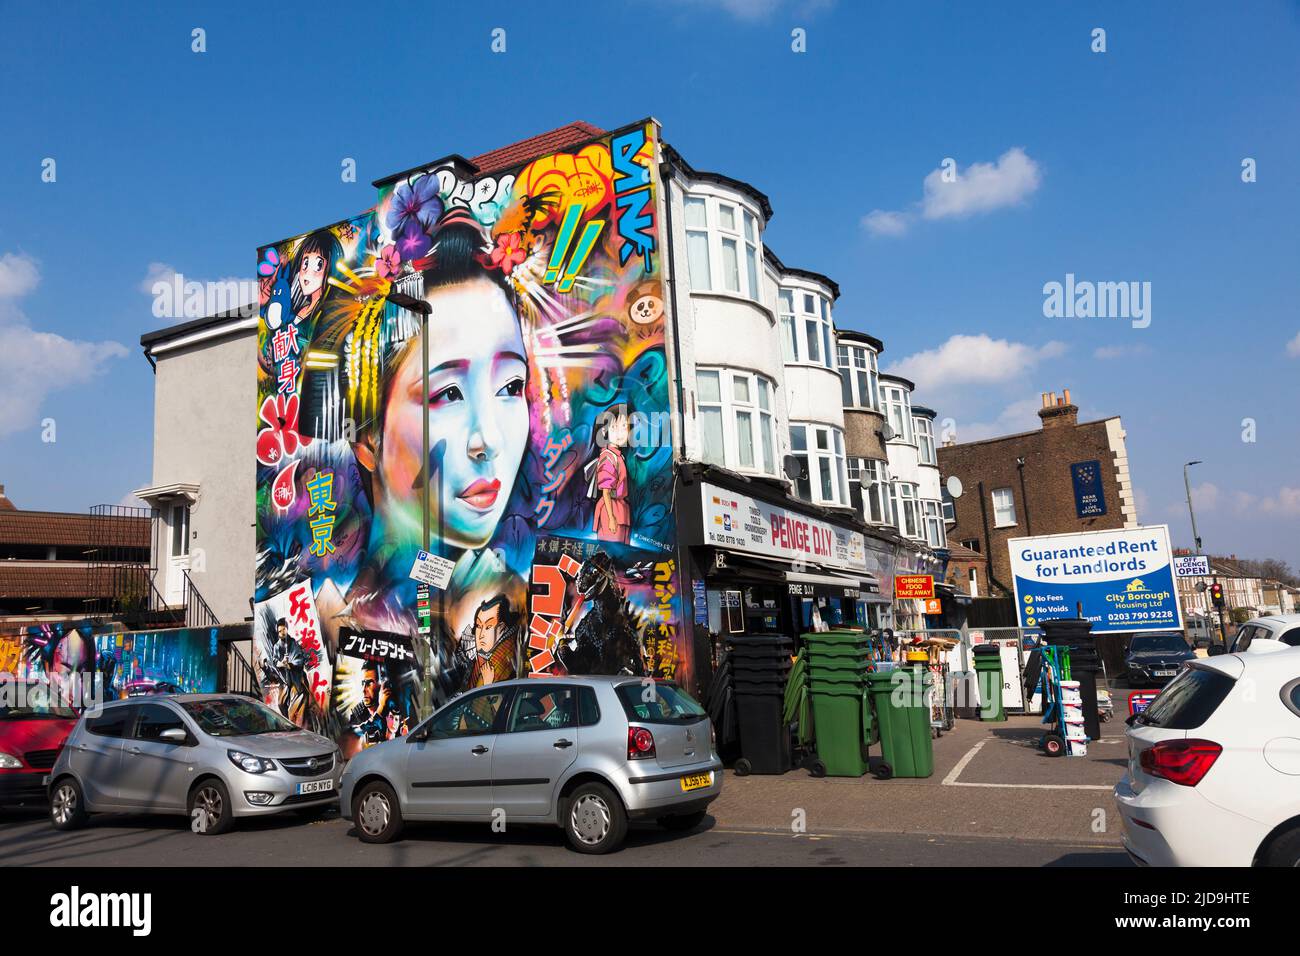 Art de rue japonais stylisé sur un mur de flanc de bâtiment. Penge, sud-est de Londres, Royaume-Uni. Banque D'Images